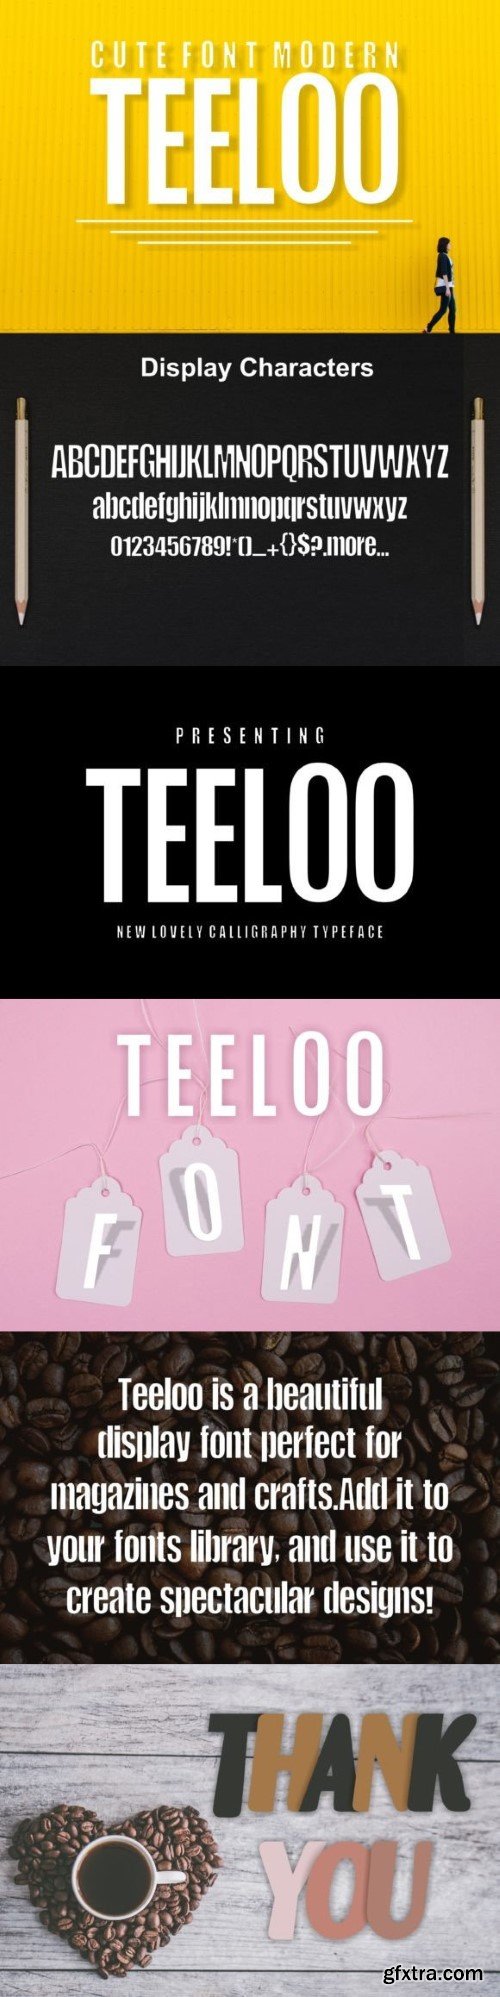 Teeloo Font